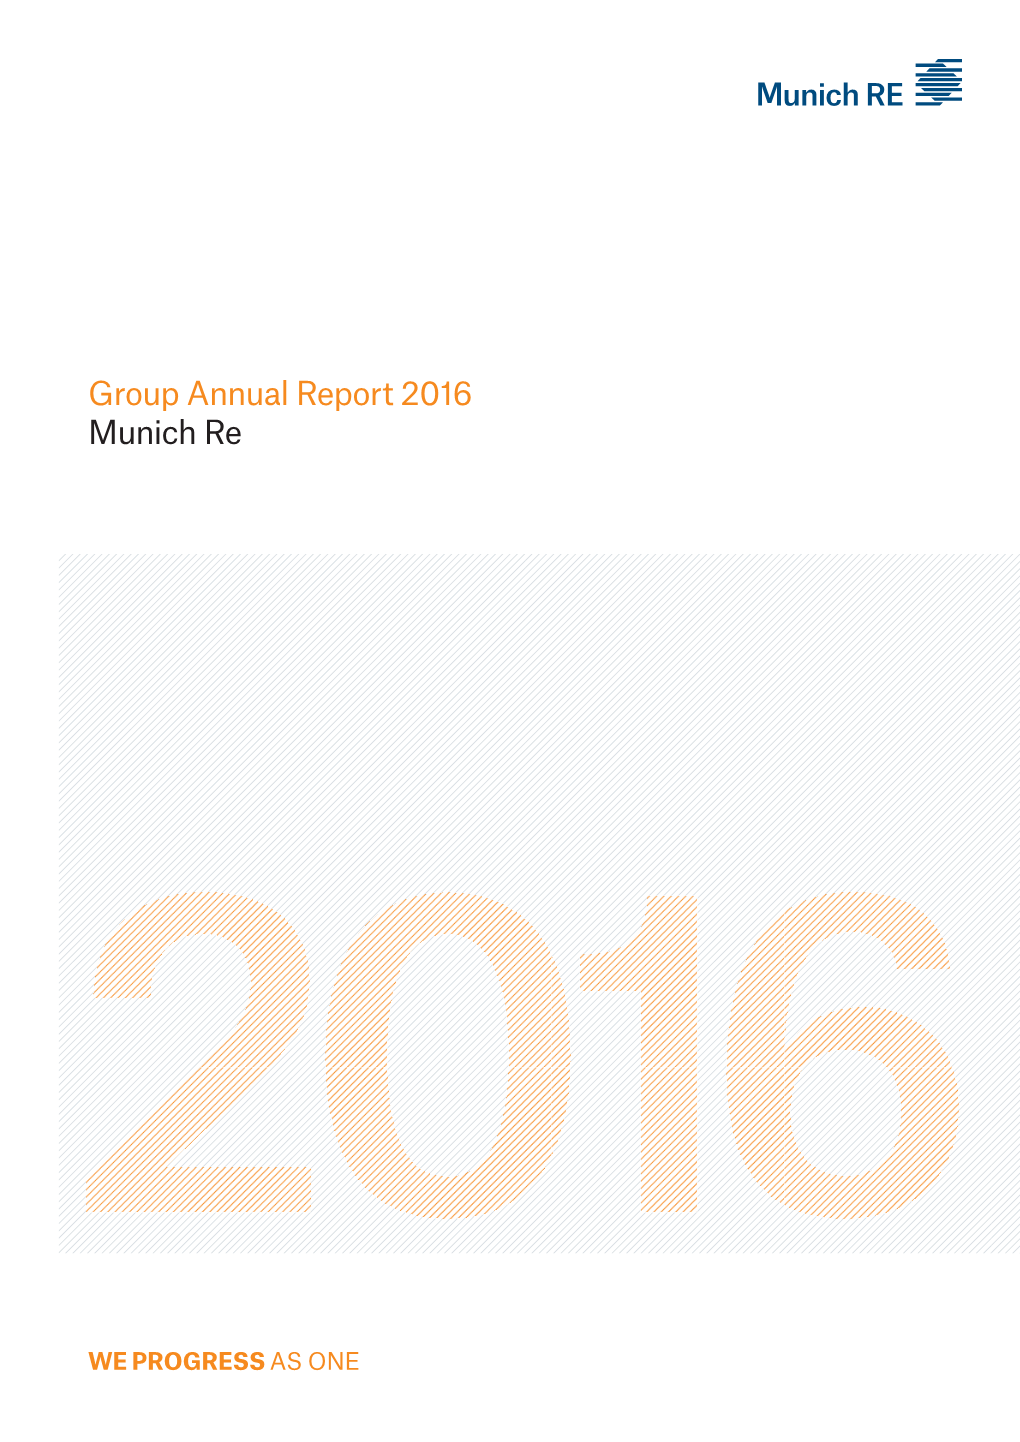 Group Annual Report 2016 Munich Re Munich Re